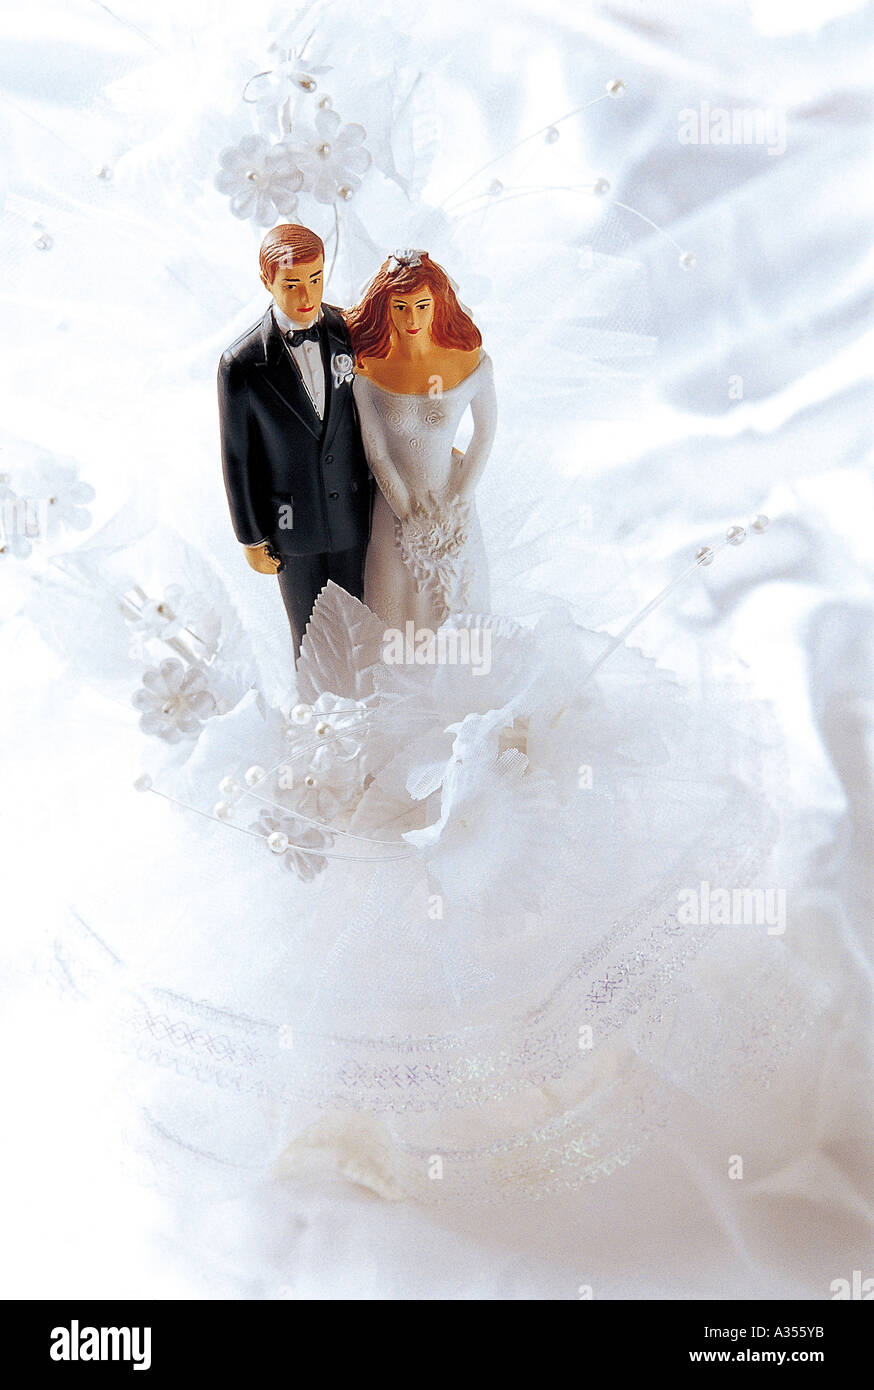 De petites figures d'une bride and groom Banque D'Images